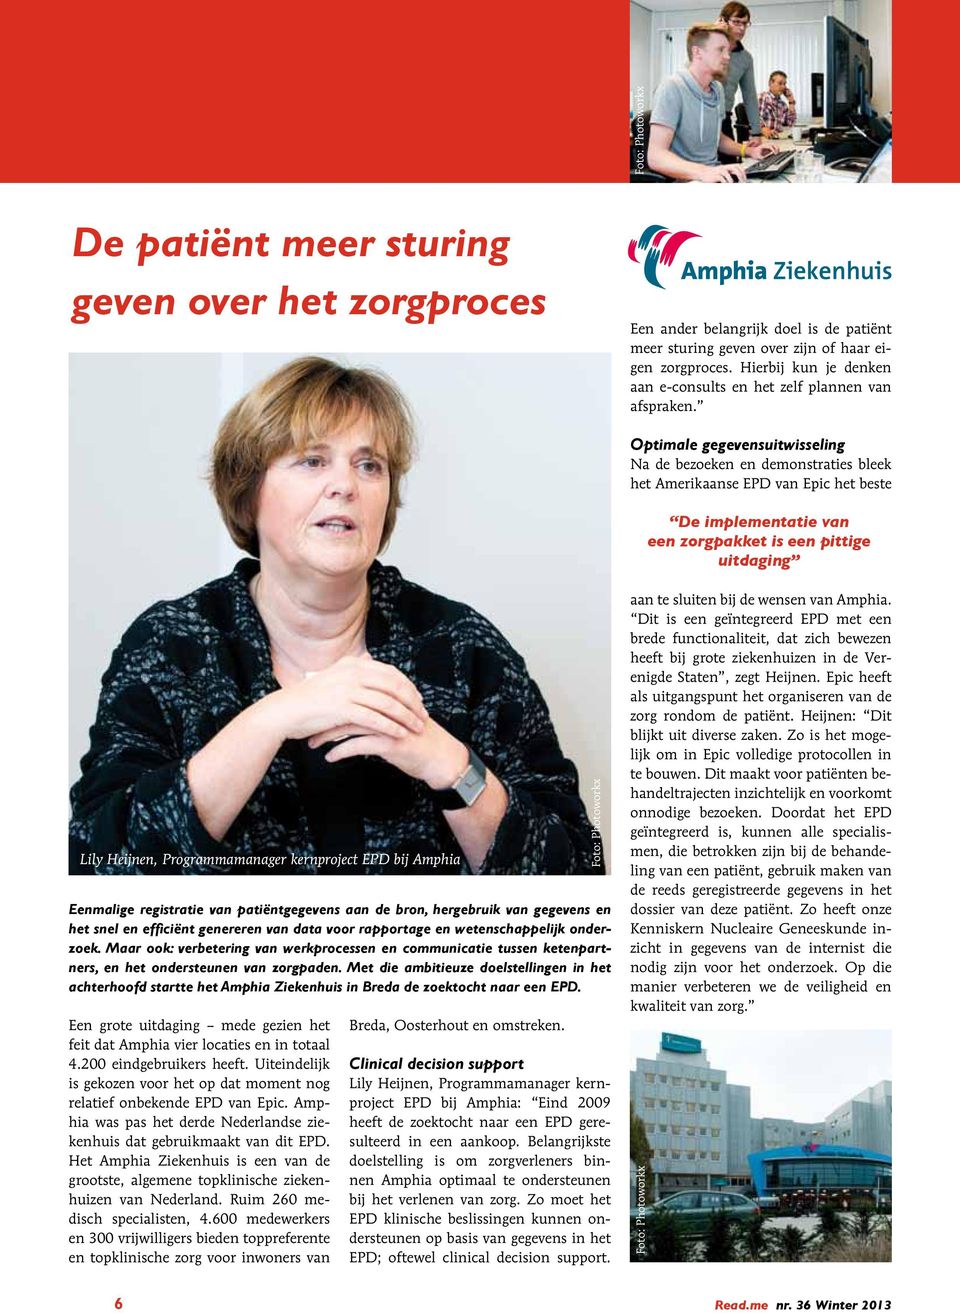 Met die ambitieuze doelstellingen in het achterhoofd startte het Amphia Ziekenhuis in Breda de zoektocht naar een EPD. Een grote uitdaging mede gezien het feit dat Amphia vier locaties en in totaal 4.